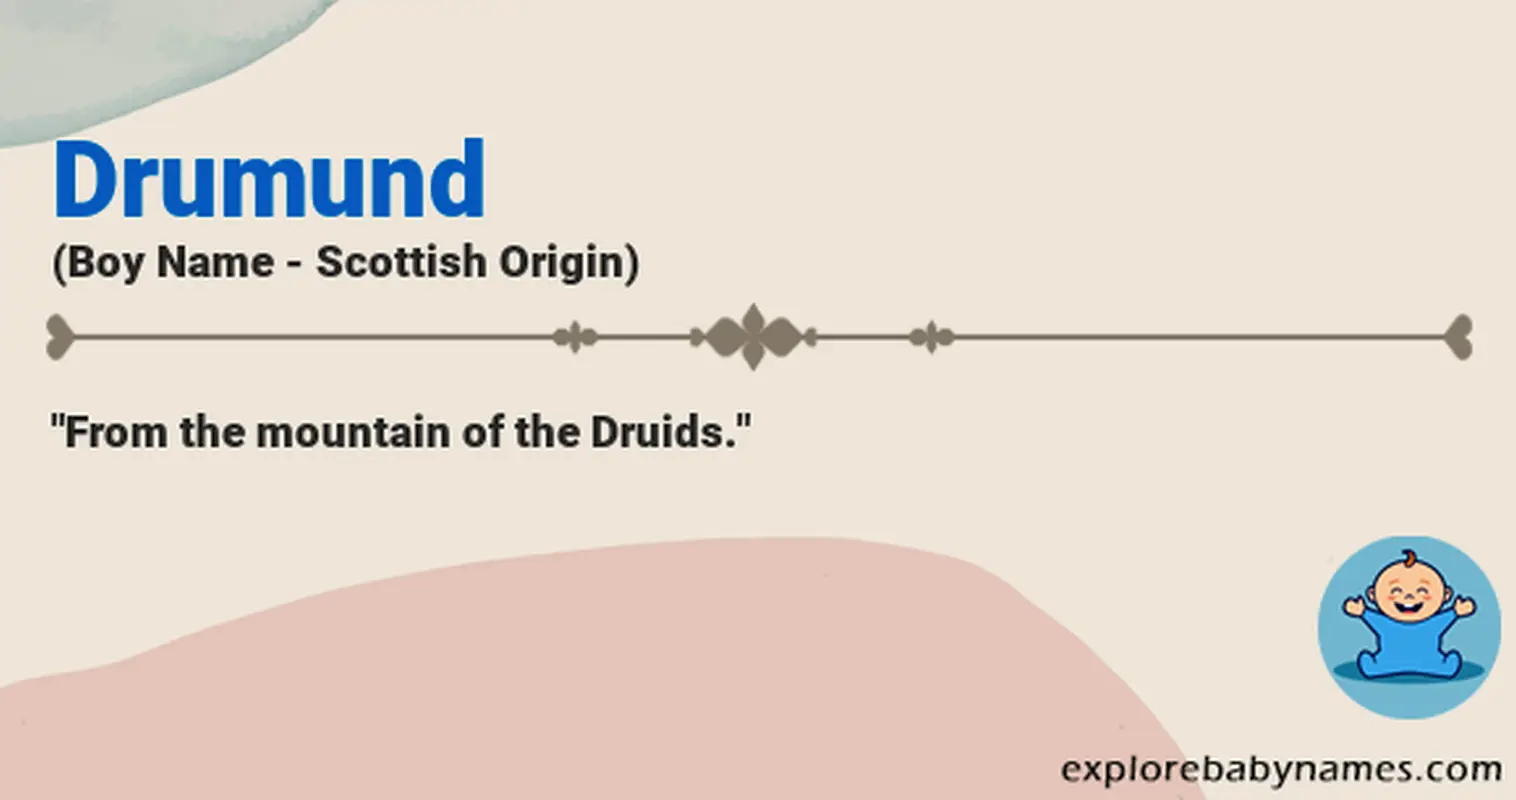 Meaning of Drumund